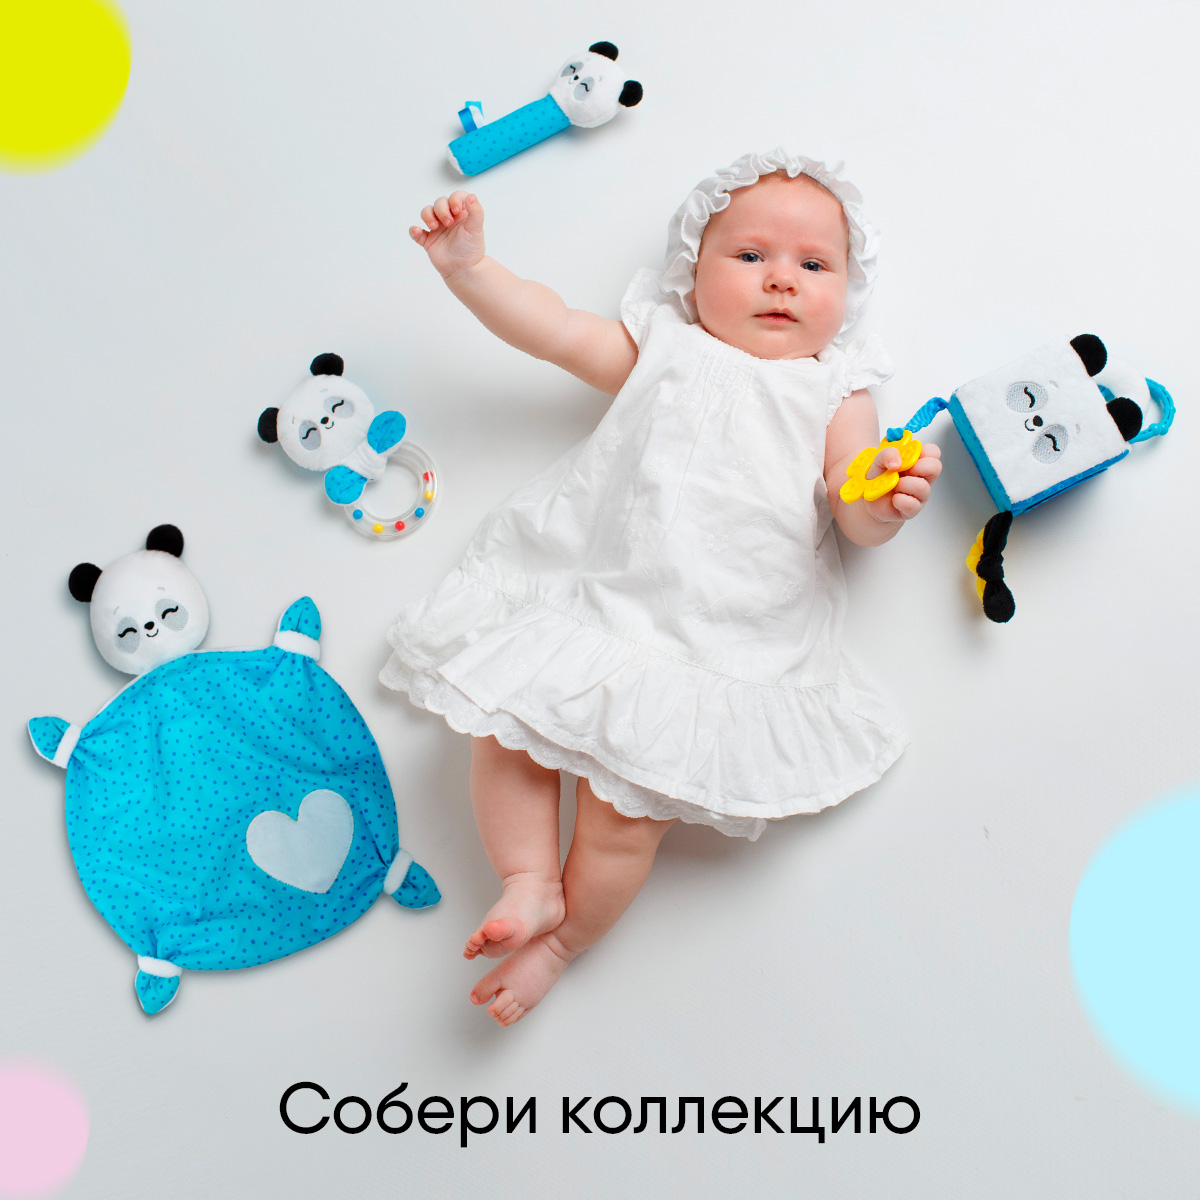 Пищалка Мякиши Развивающая мягкая игрушка для новорождённых Пандочка Гучи развитие ребёнка игры подарок - фото 6